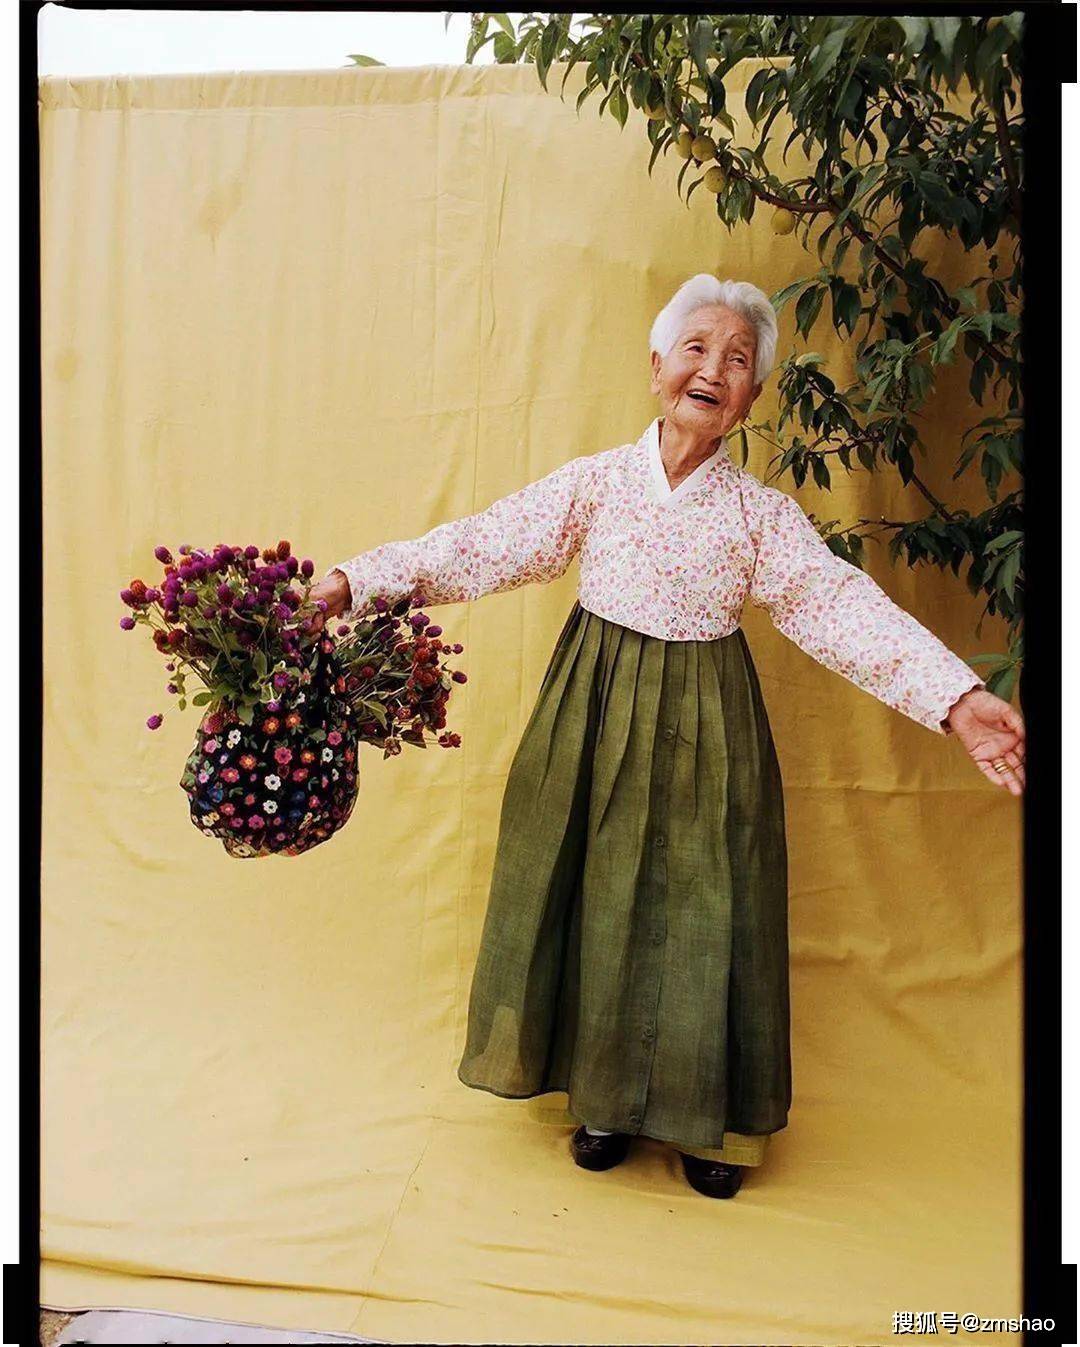 这些奶奶们最小的93岁,最大的106岁,人生已经历经许多高低起伏.